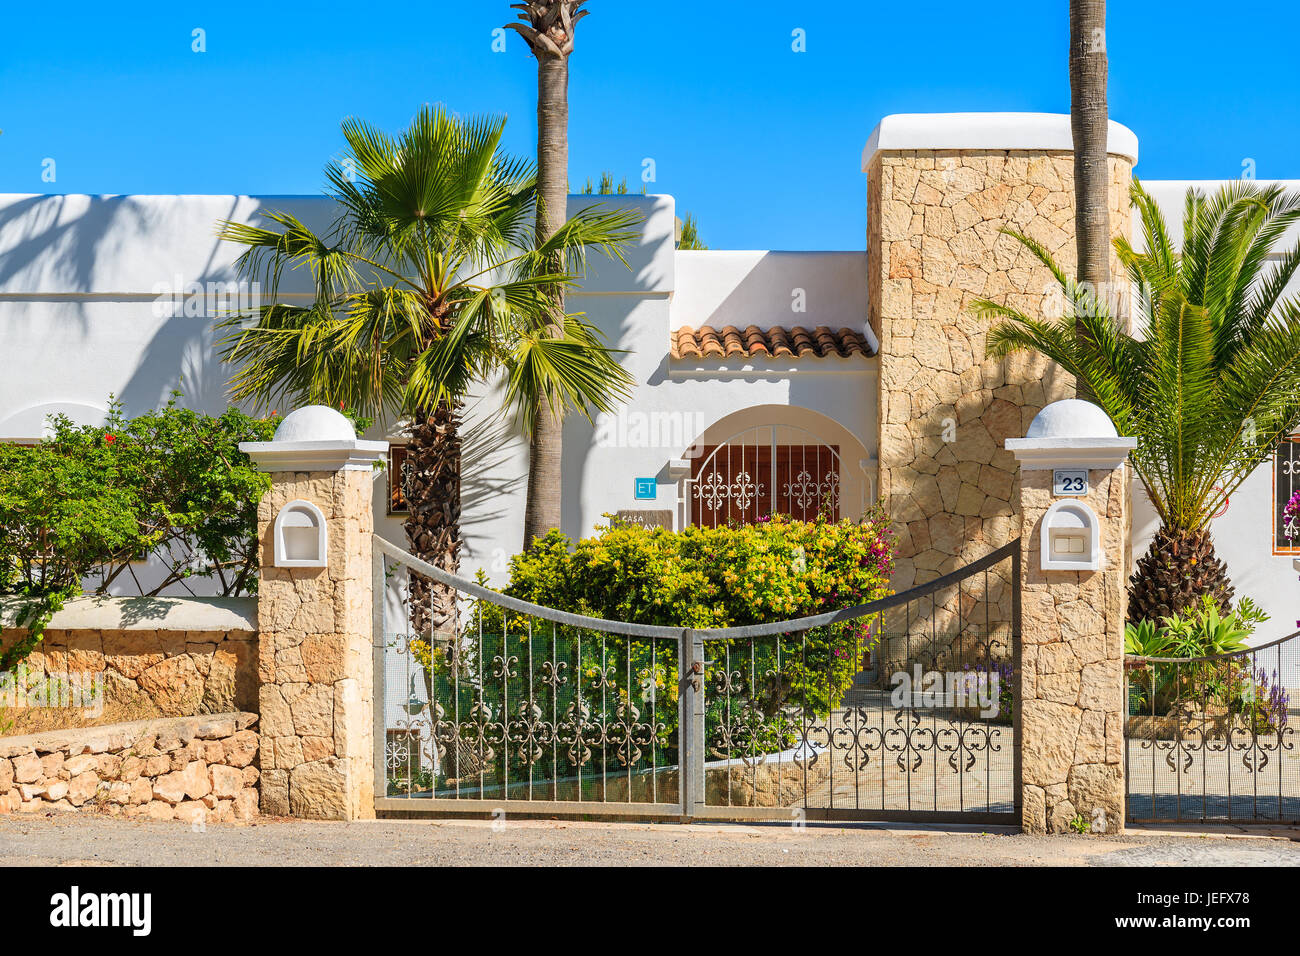 Insel IBIZA, Spanien - 20 Mai 2-17: Eingangstor zum Luxus-weiße Farbe-Ferien-Villa in Cala Nova-Bereich der Insel Ibiza, Spanien. Stockfoto